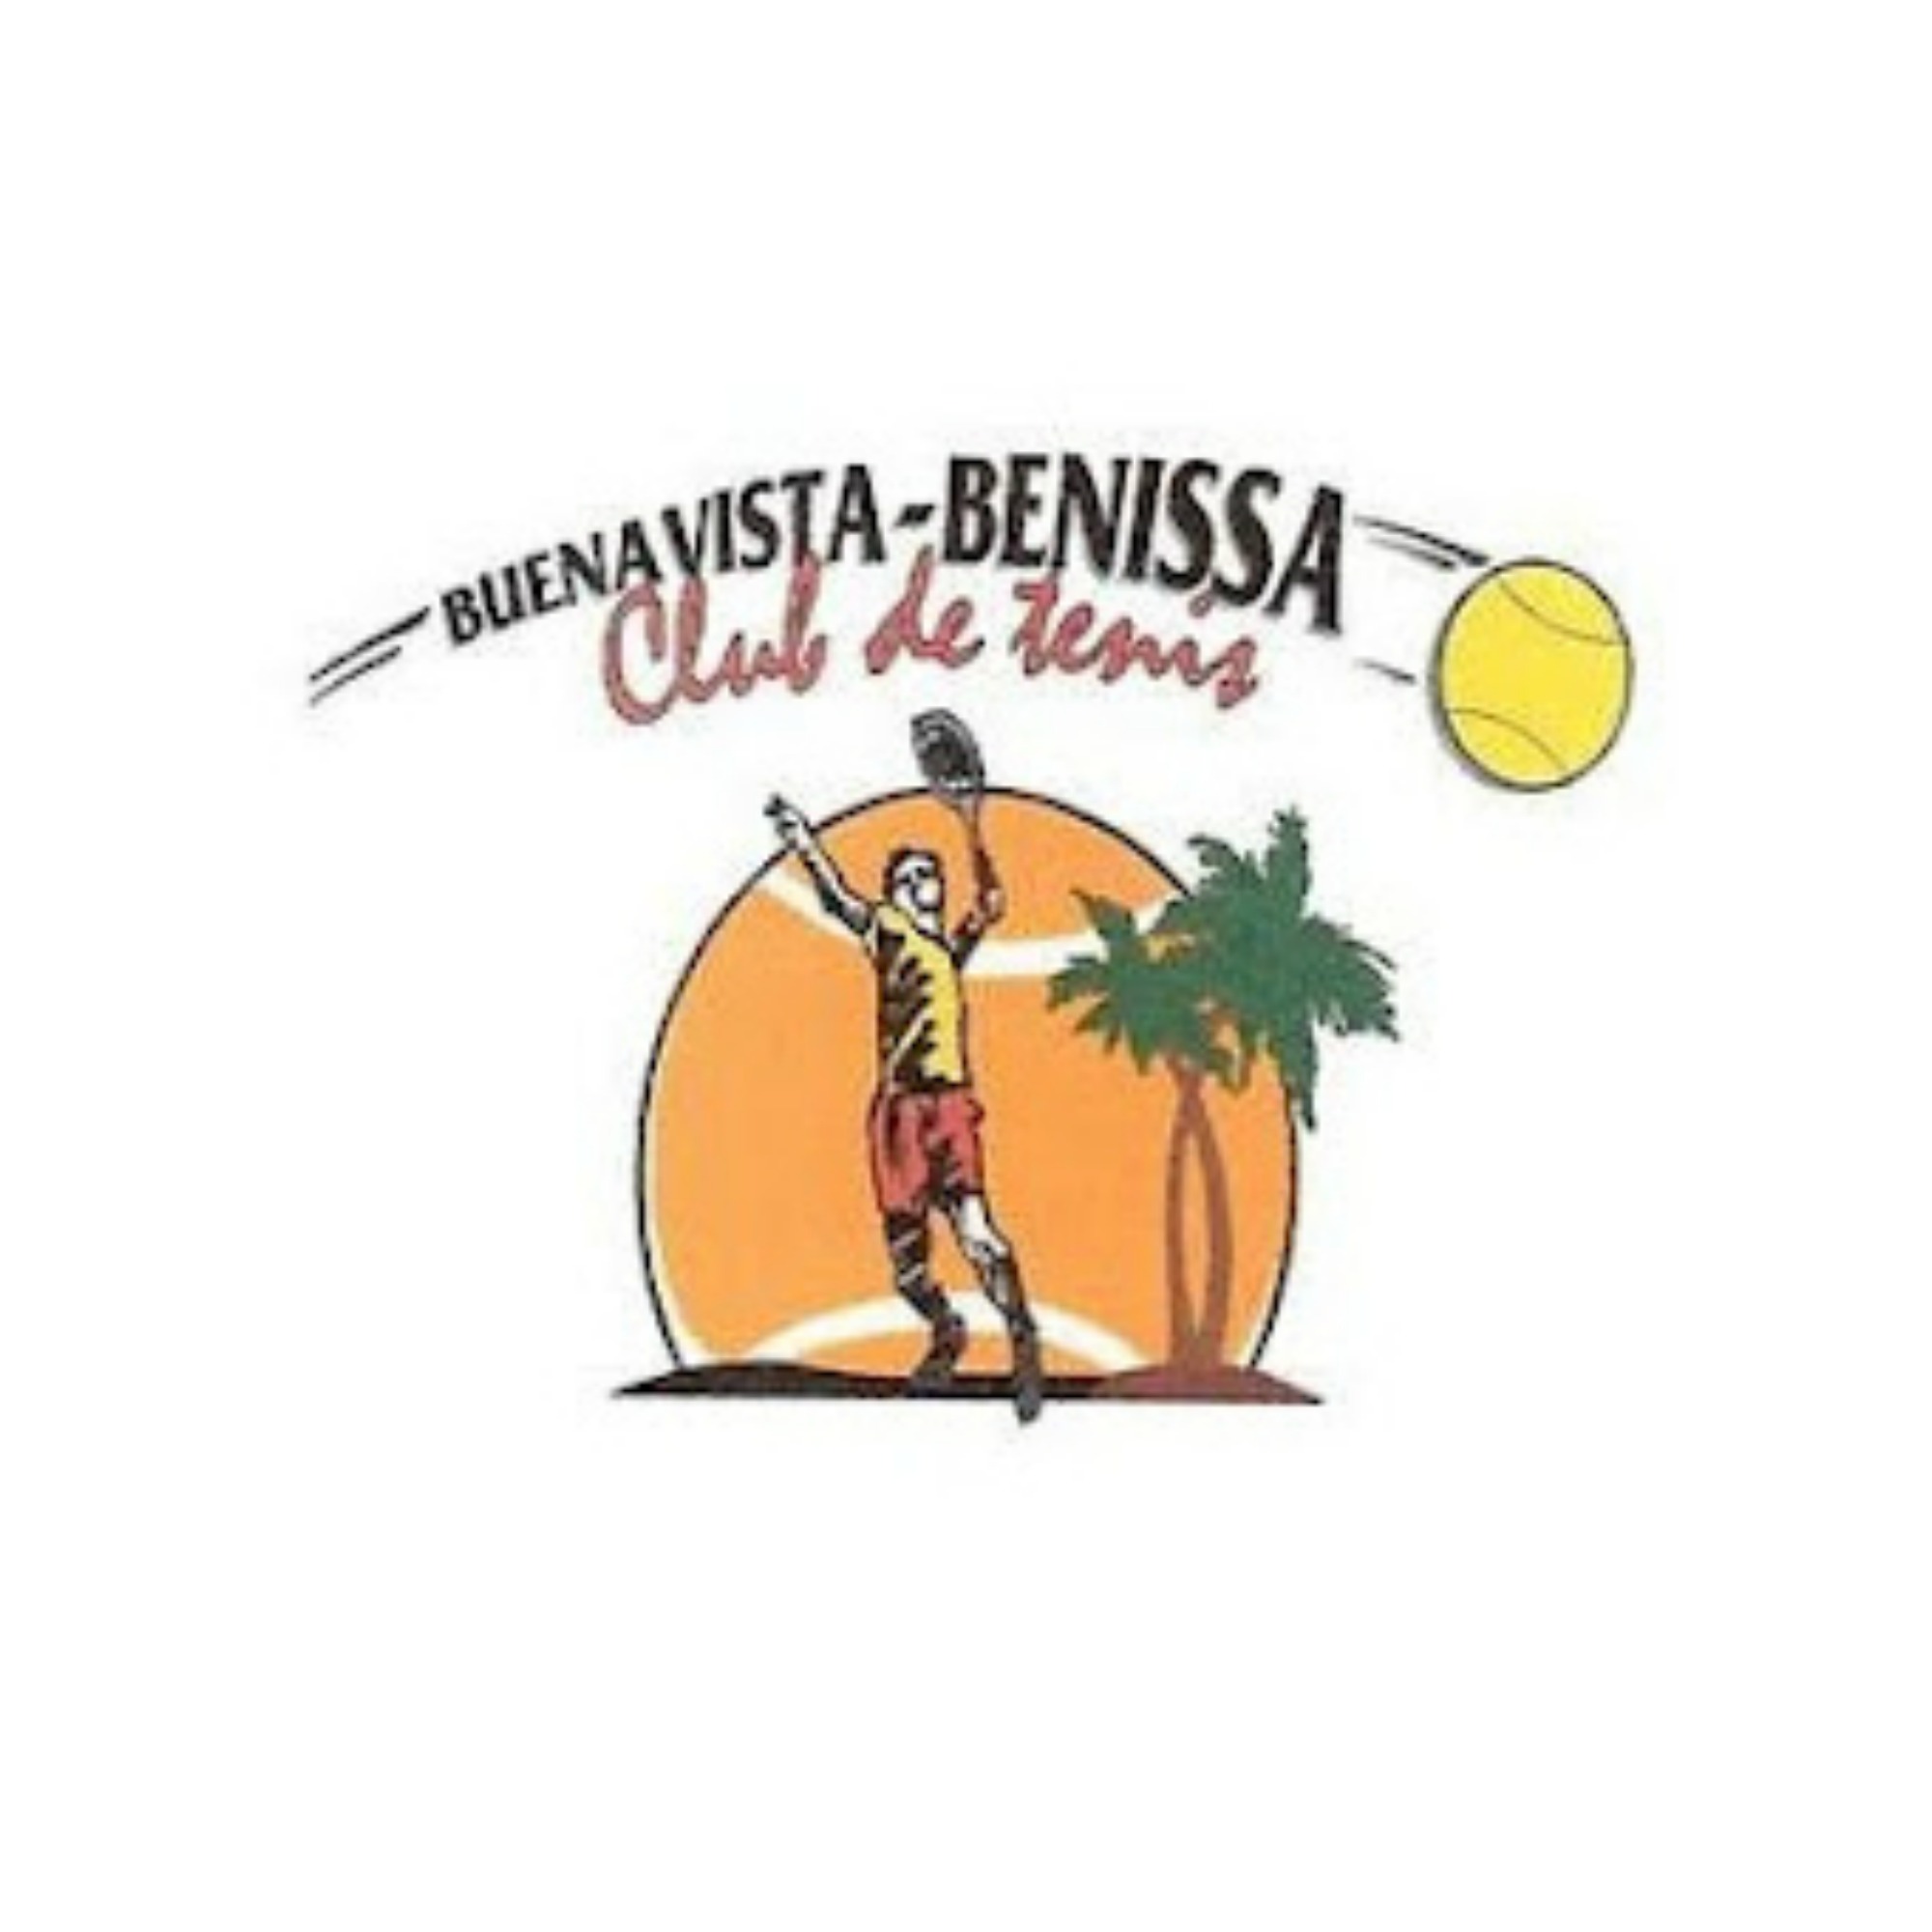 Club de Tennis Buenavista 